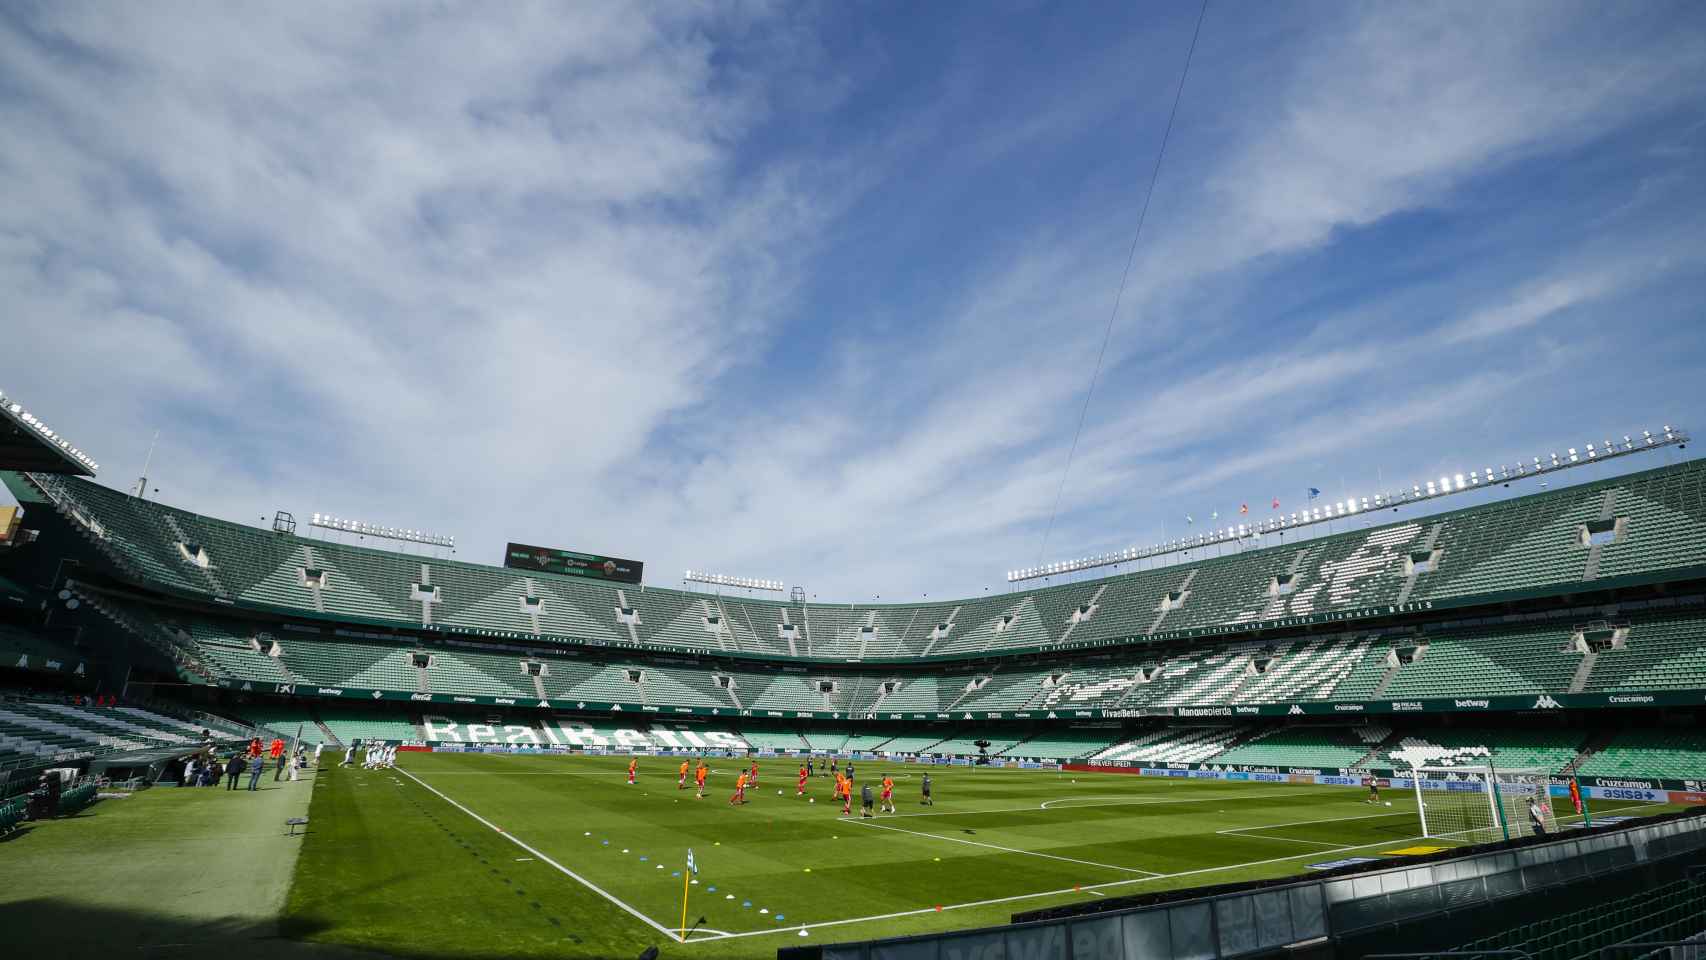 La panorámica del Estadio Benito Villamarín